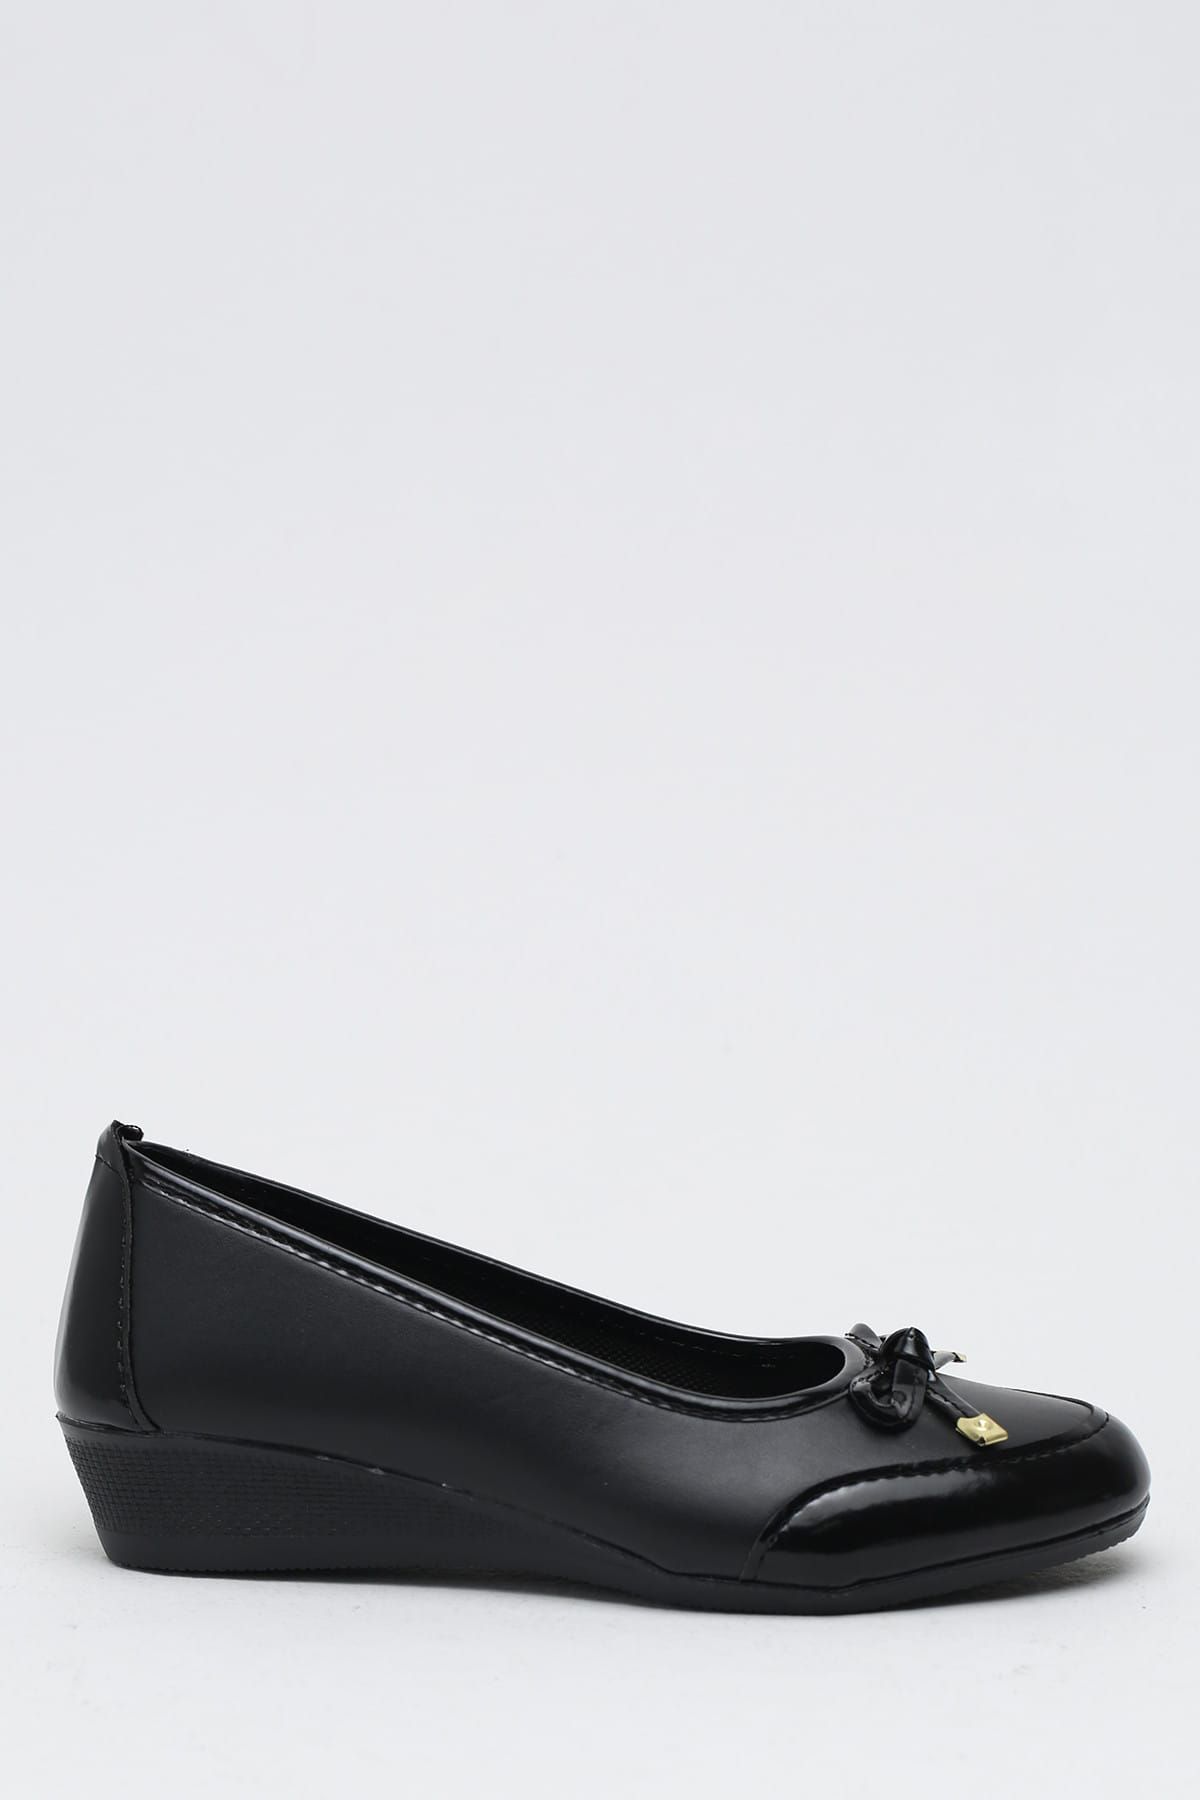 Ayakkabı Modası Siyah Kadın Dolgu Topuklu Ayakkabı 1010-19-111002